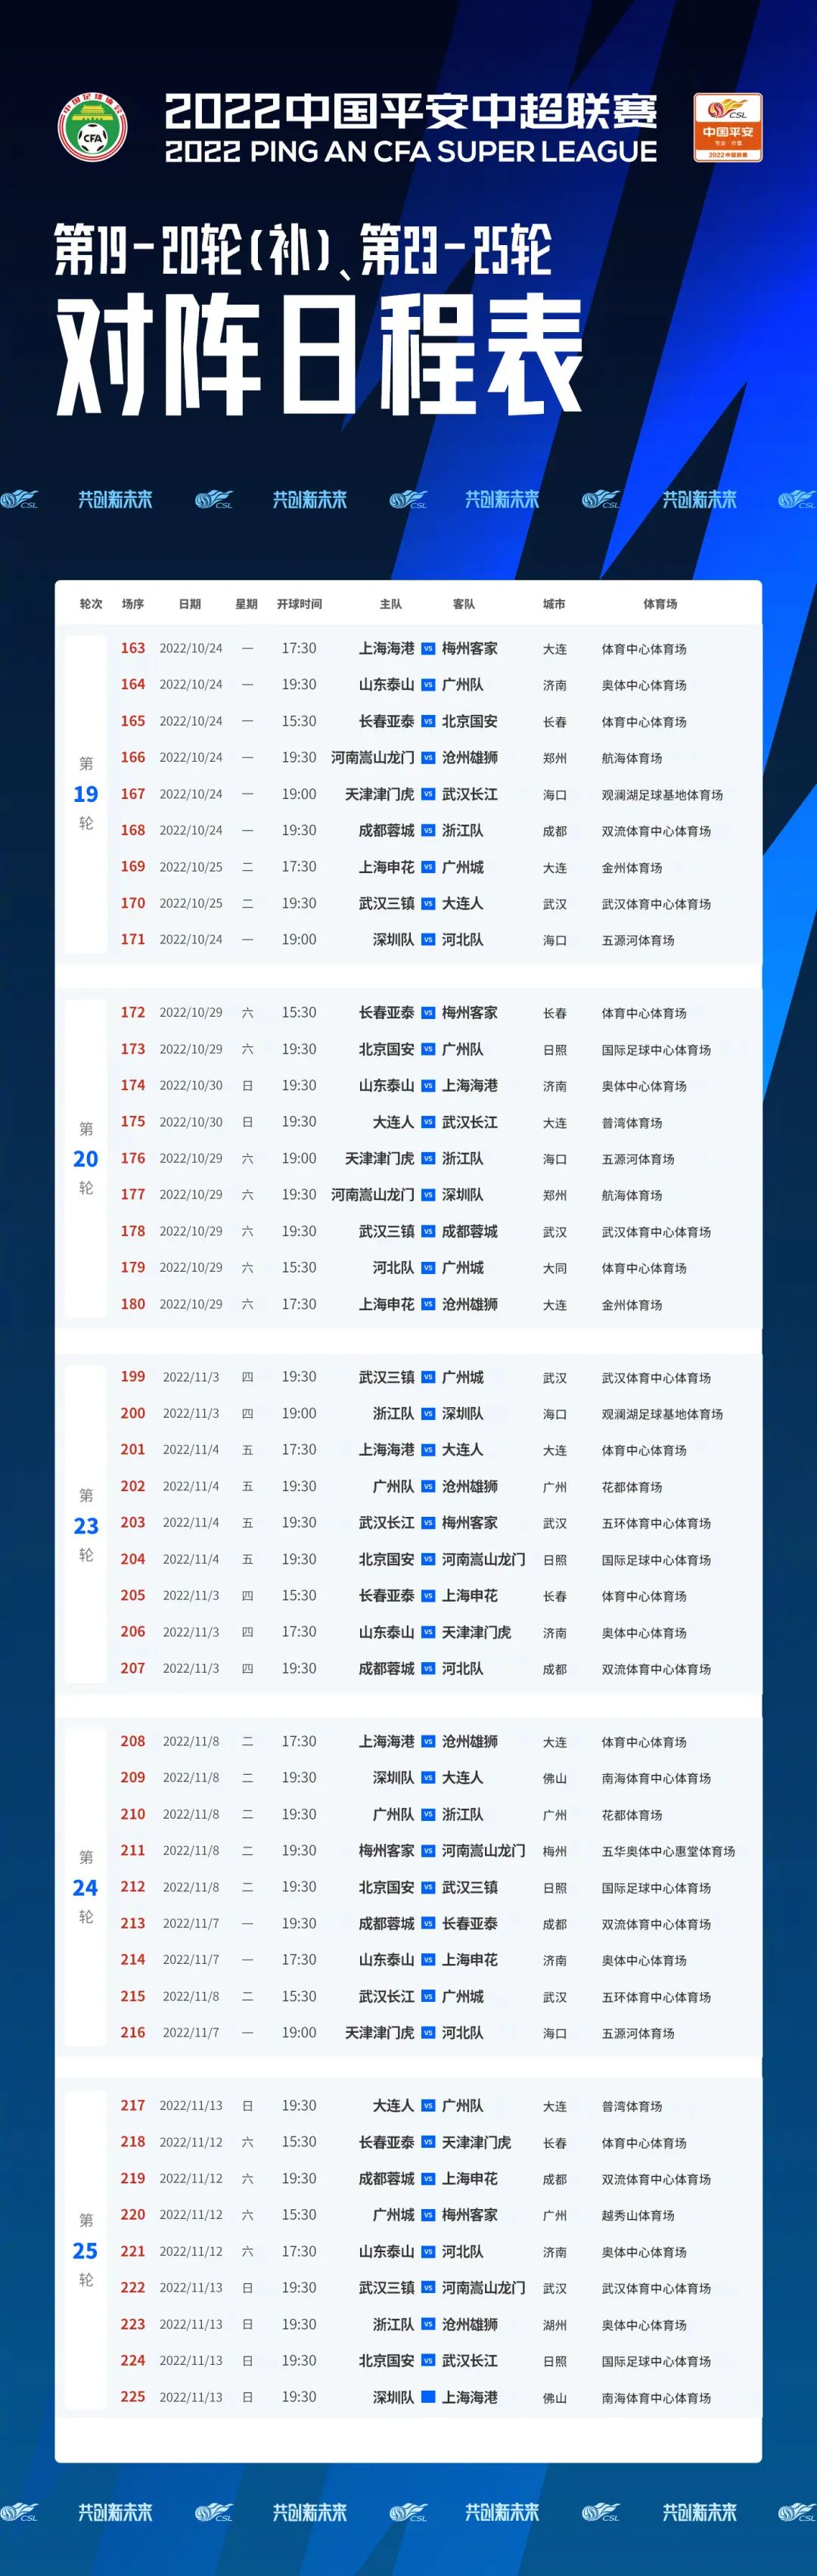 2022中超联赛第19-20轮（补赛）、 第23-25轮上海申花对阵日程表_PP视频体育频道